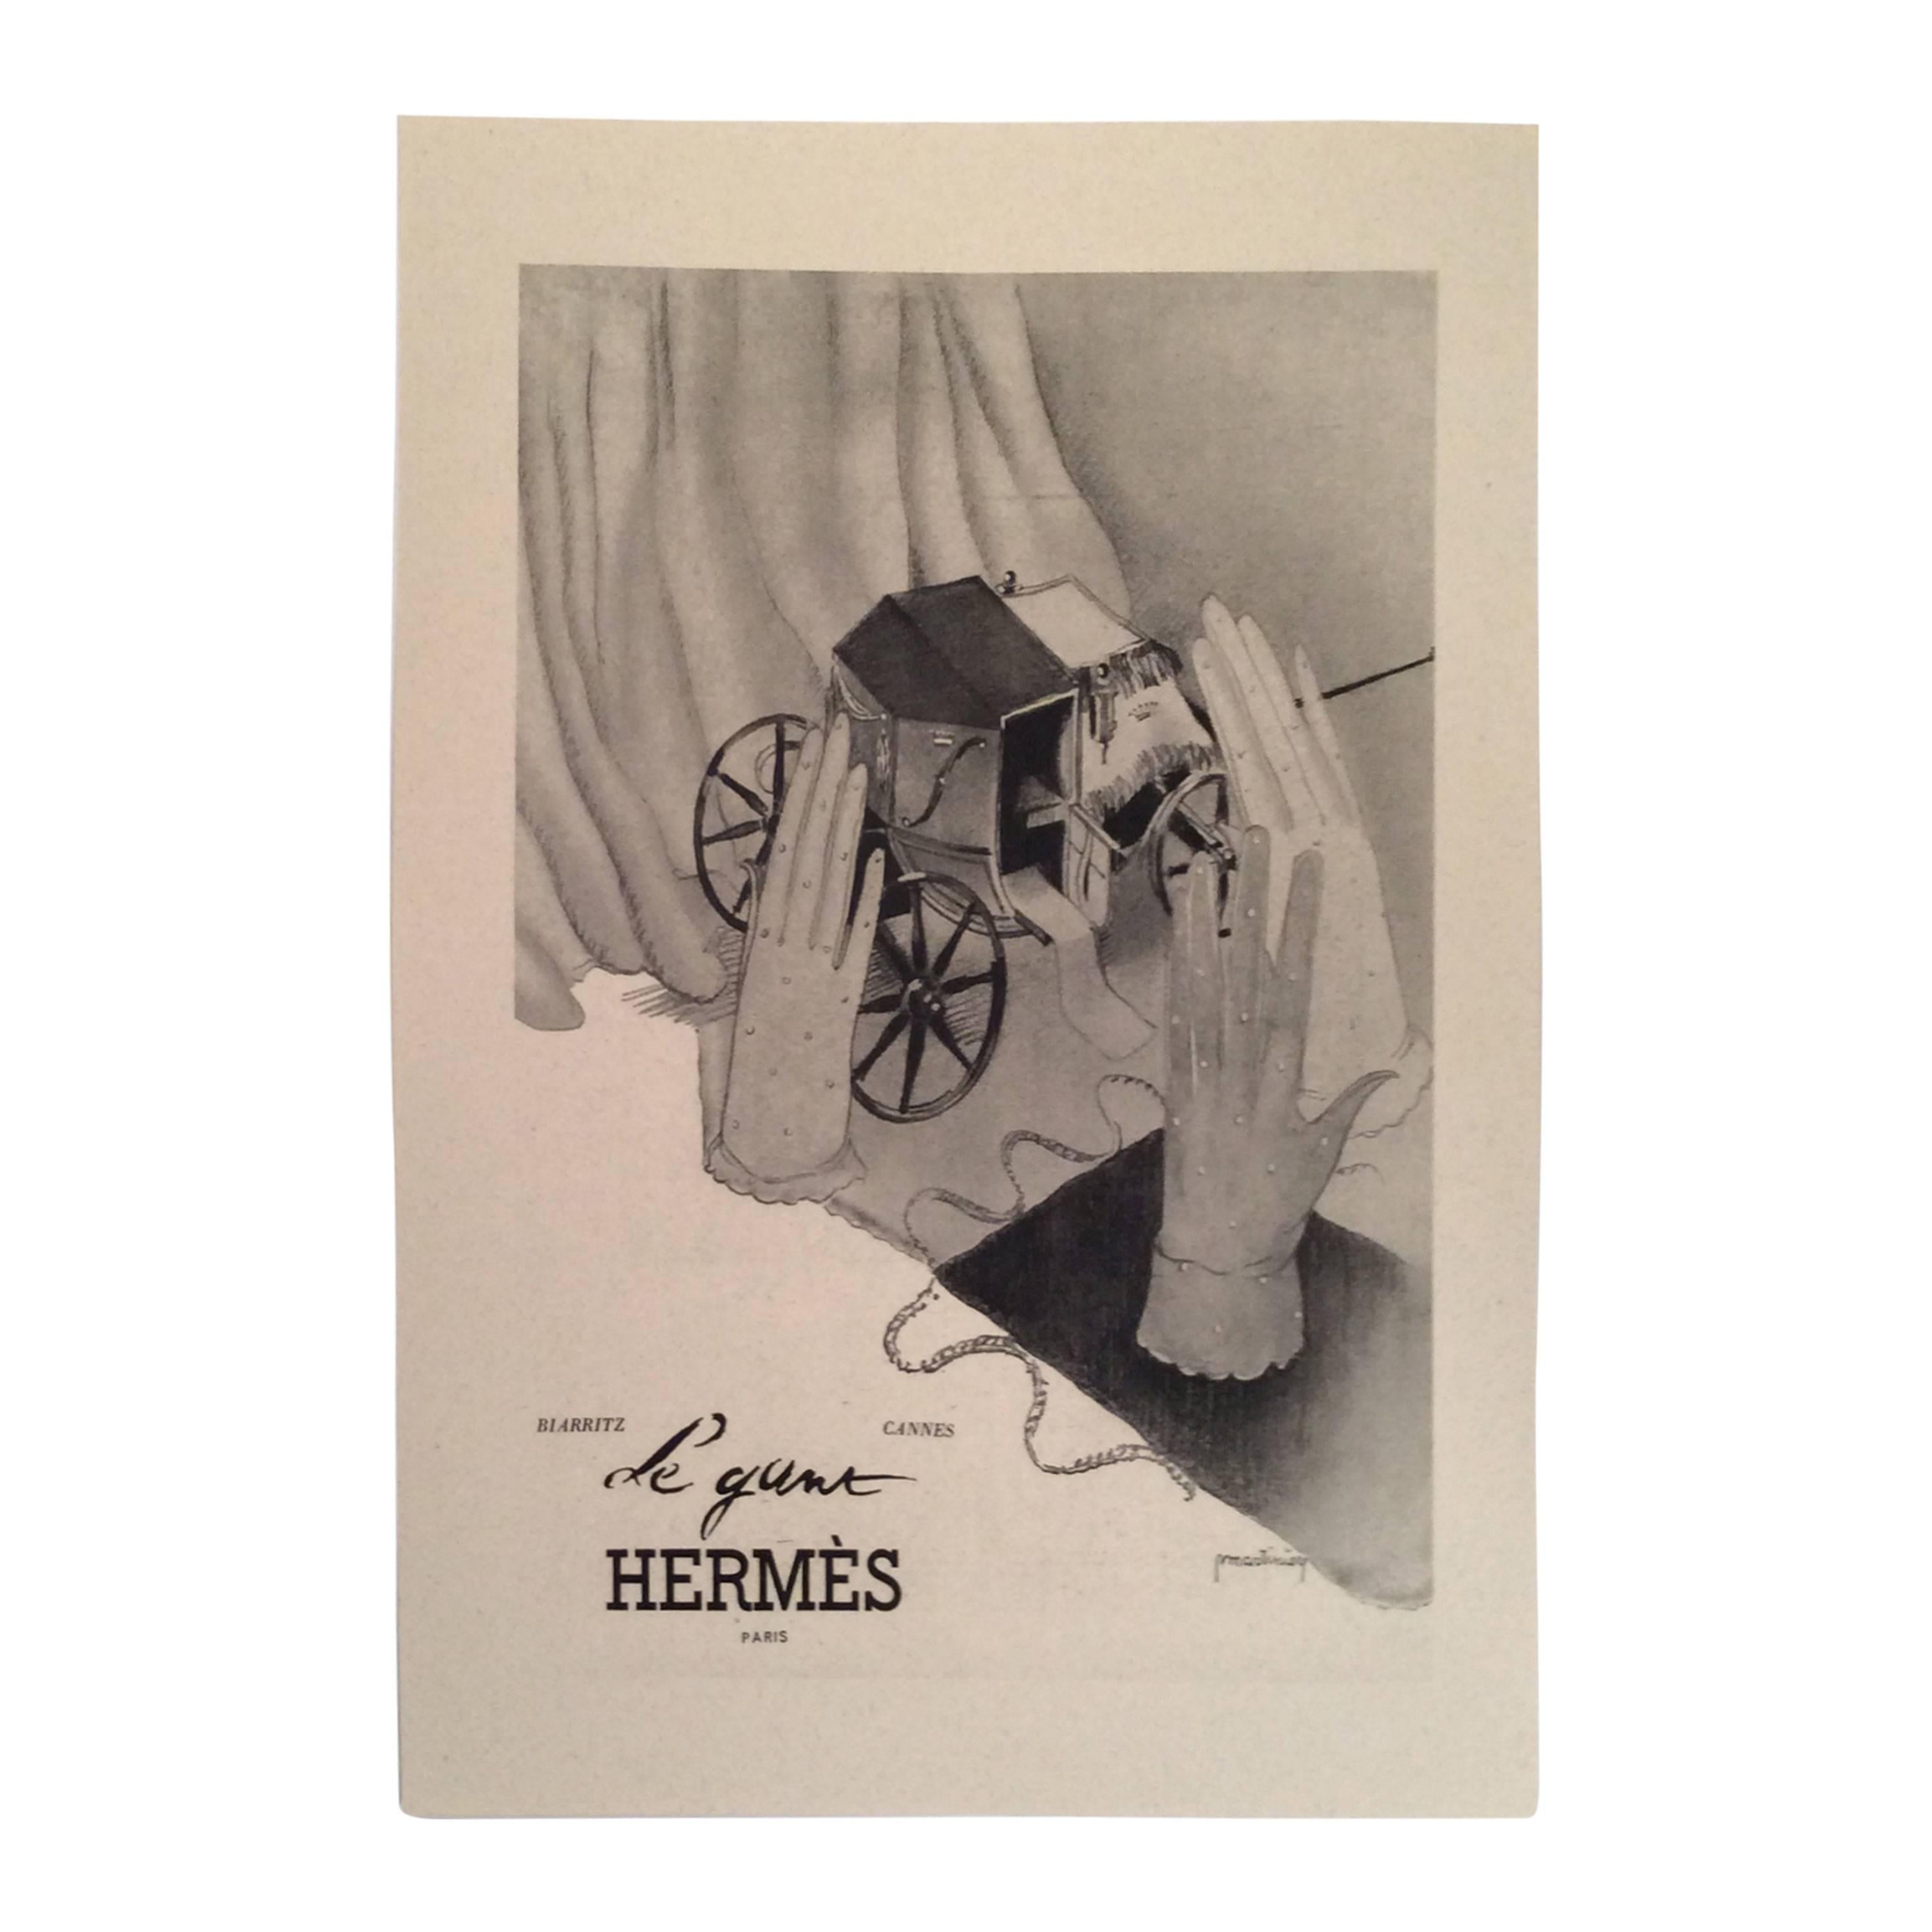 Hermes Vintage Ad Print - 1930's